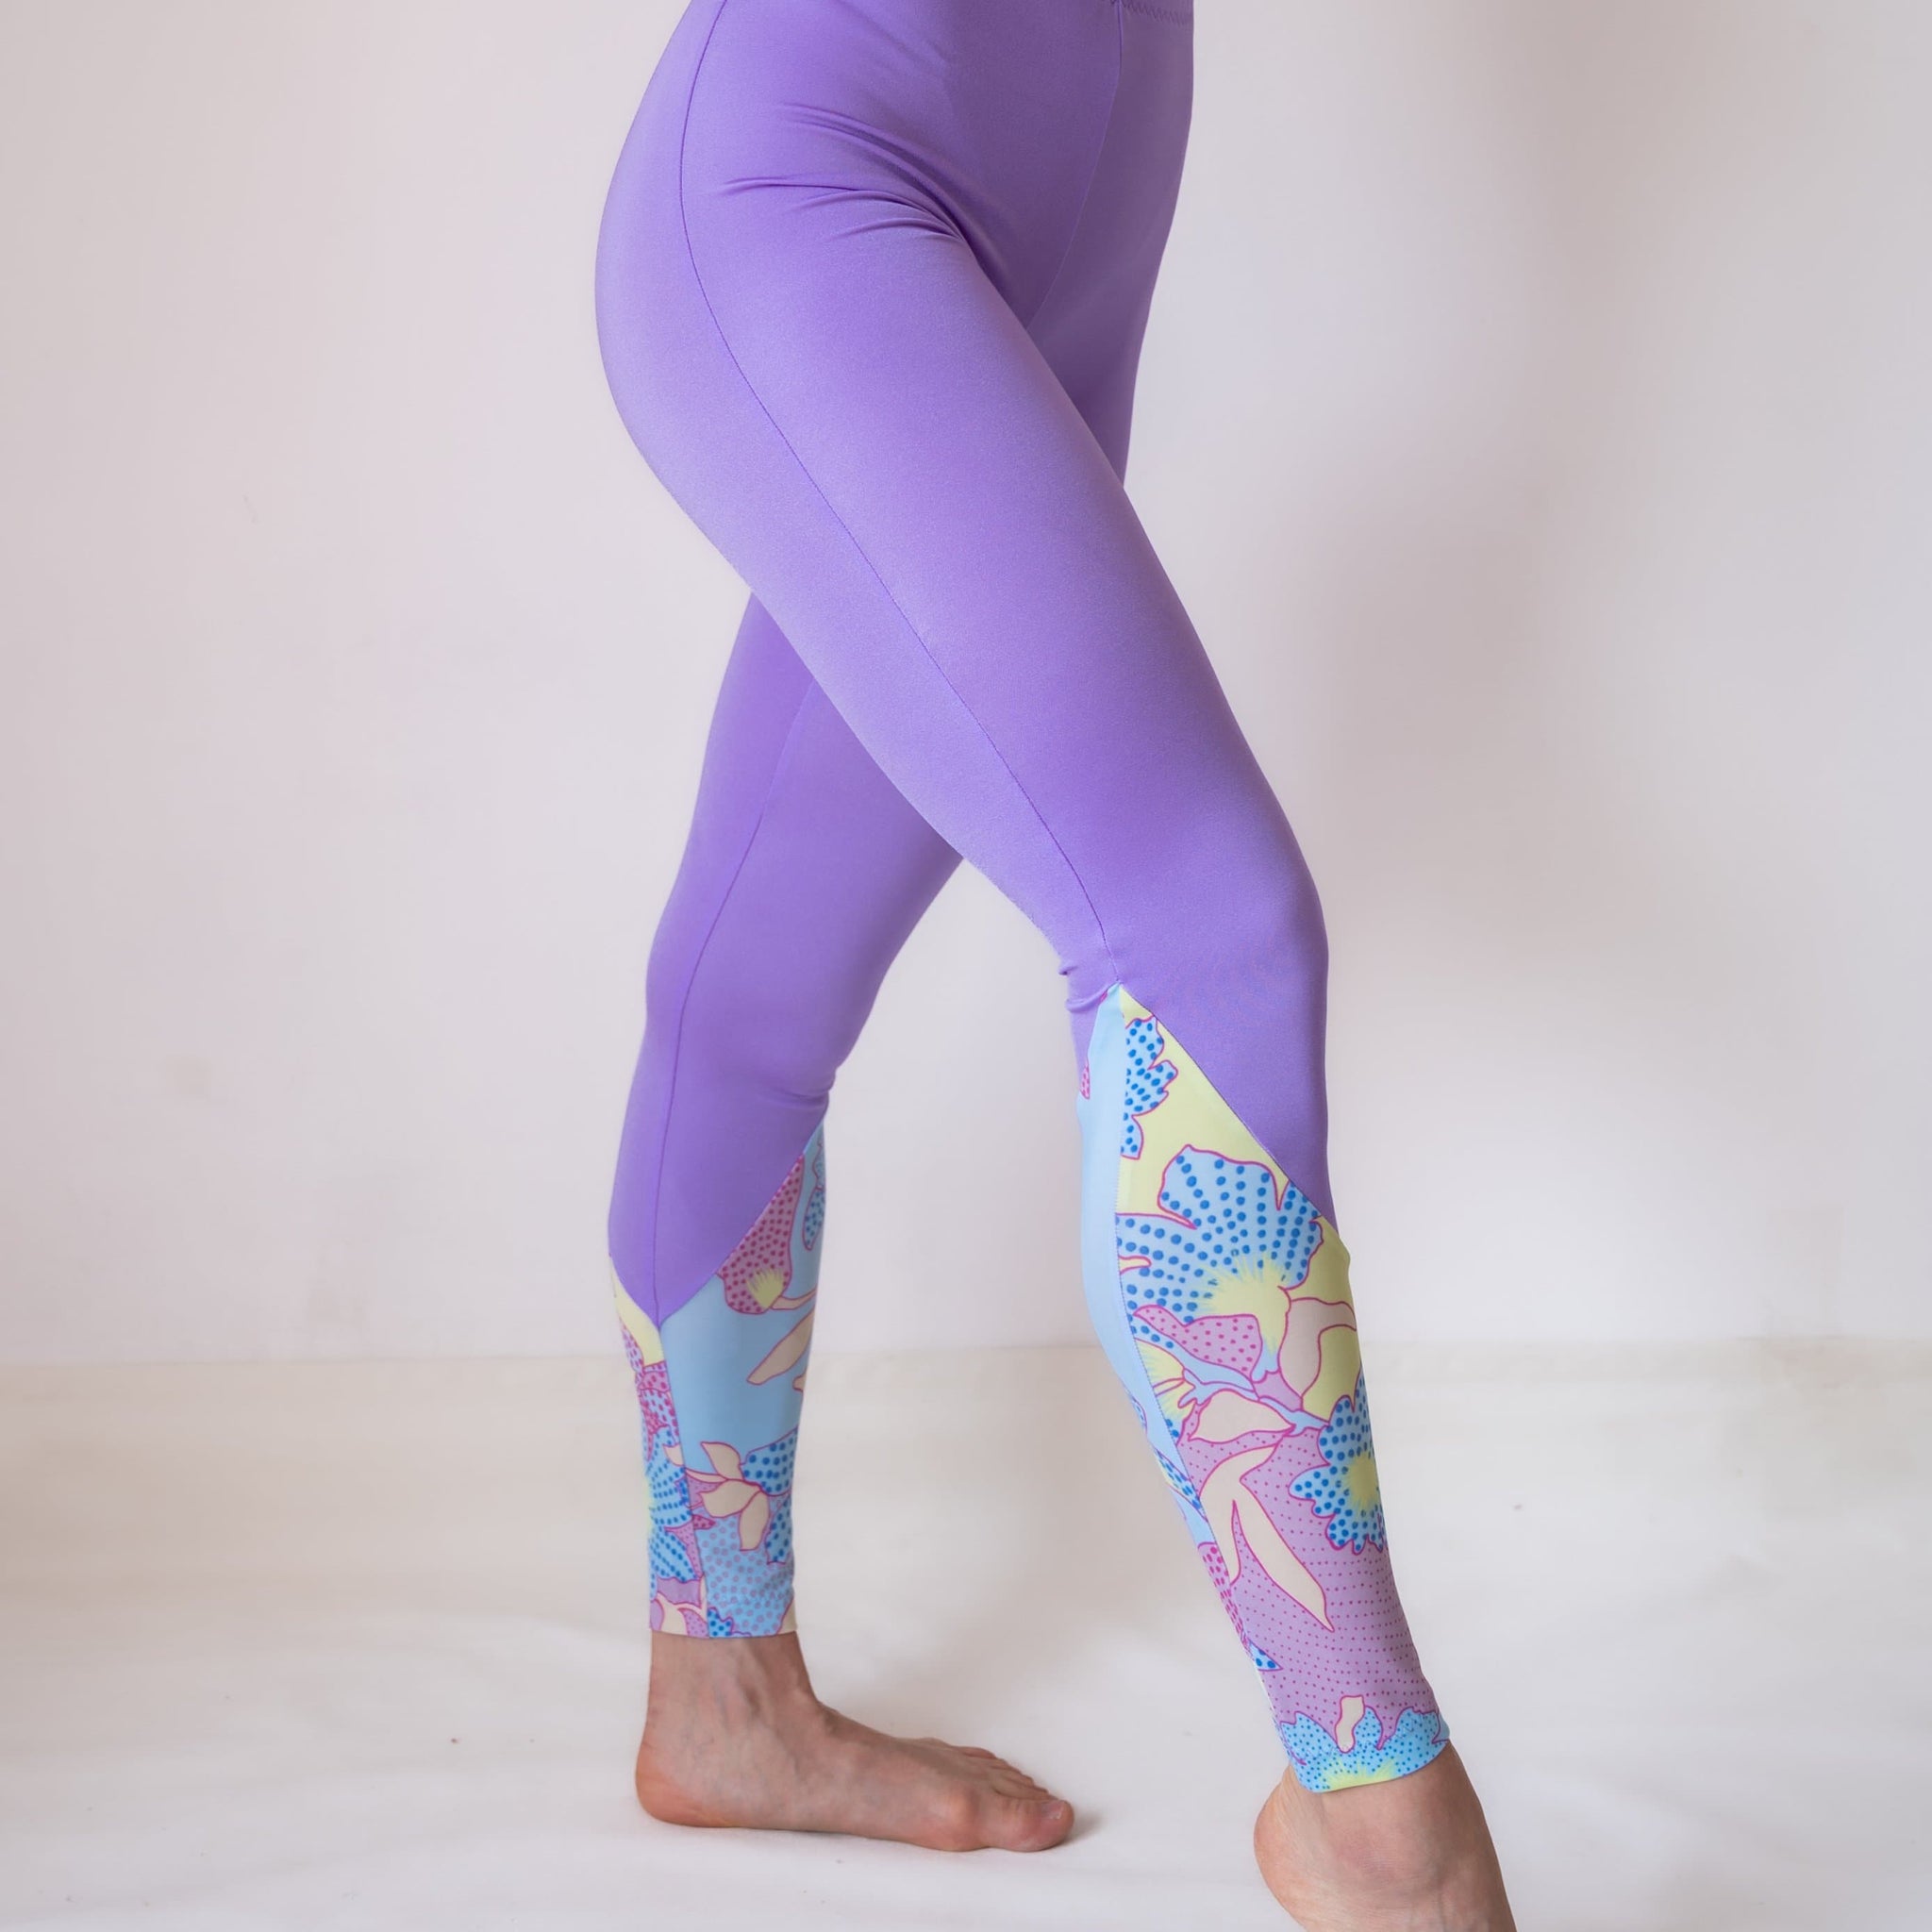 Mauve Purple Cropped Active Bottoms Women's Sports Leggings